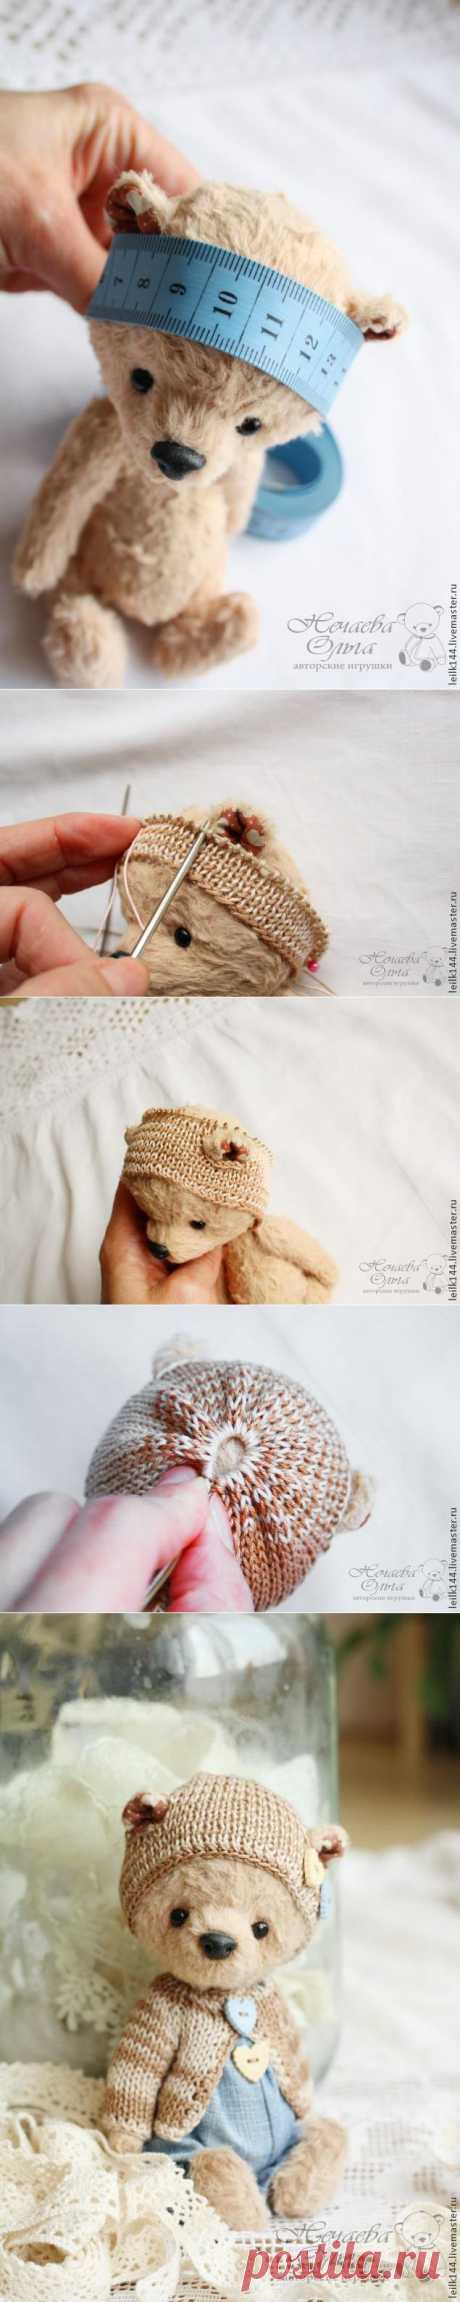 Как связать шапочку для мишки - Ярмарка Мастеров - ручная работа, handmade